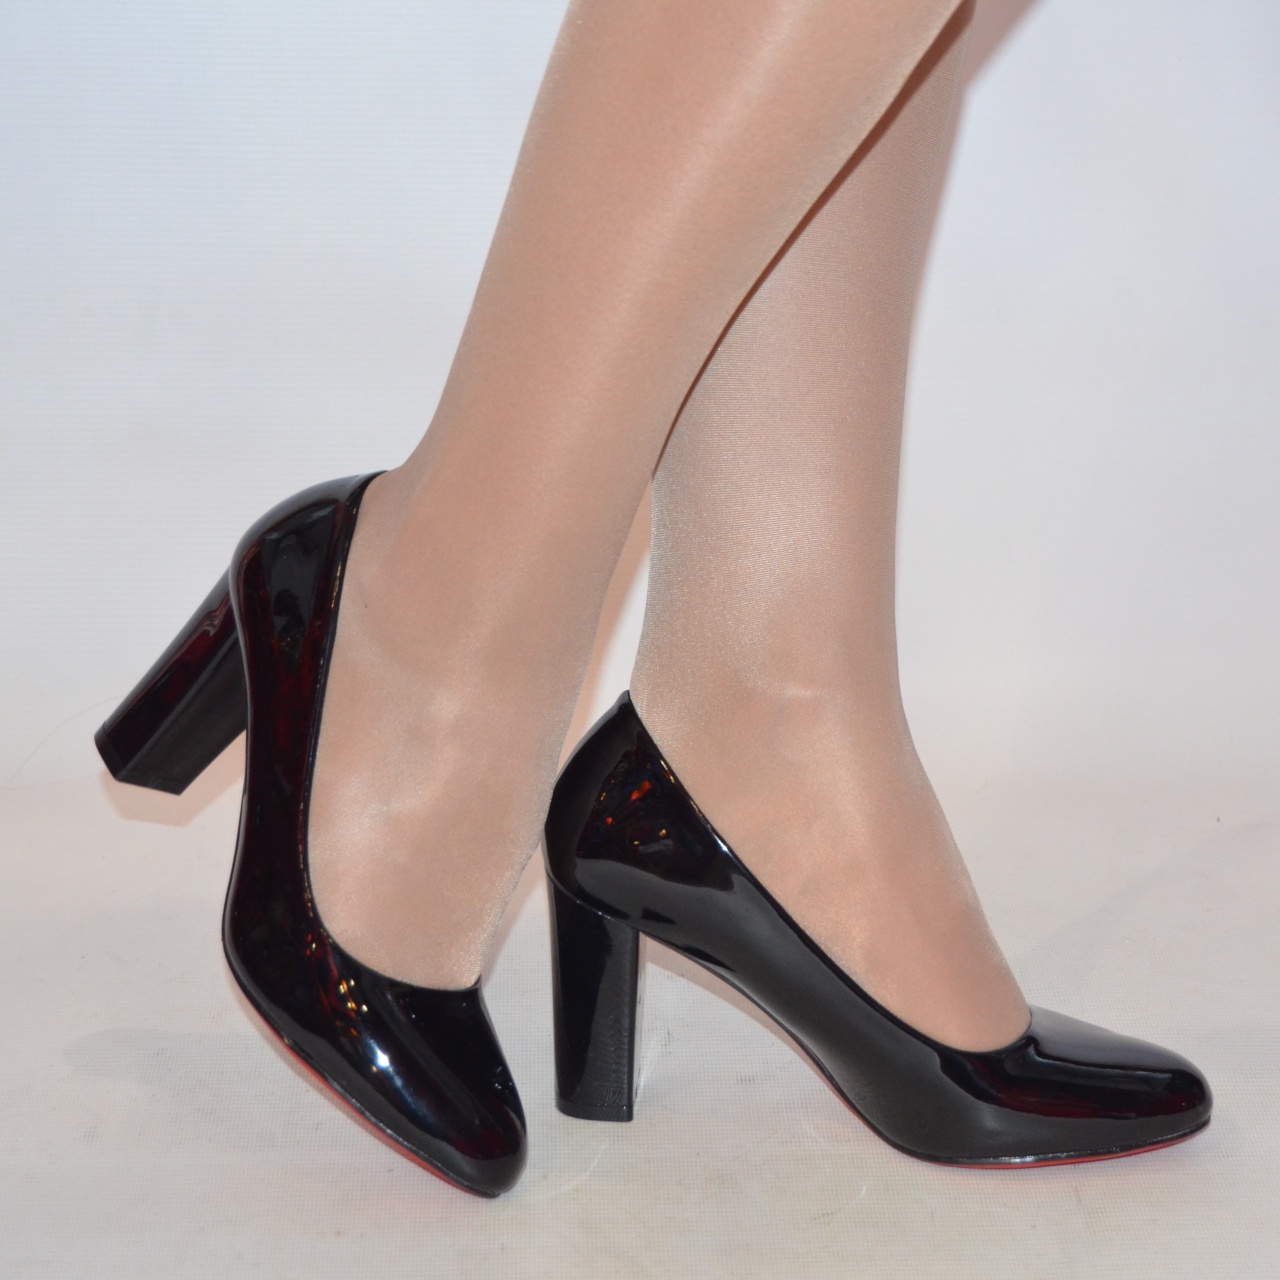 Туфлі жіночі Meko Melo 1609 чорні шкіра-лак каблук розміри 37,38